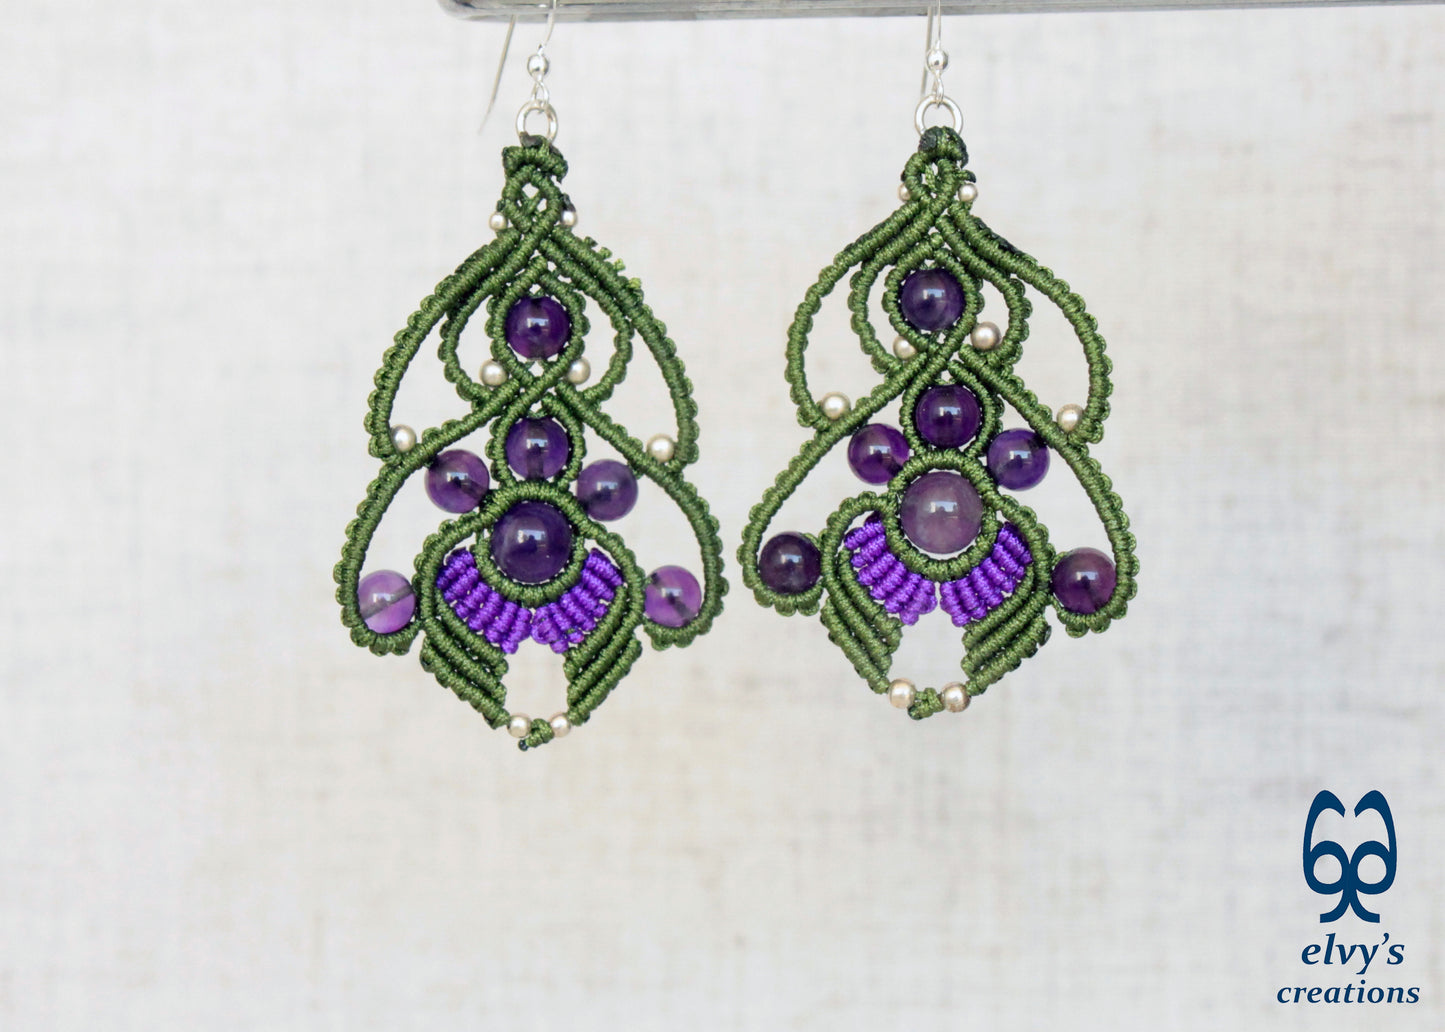 Handmade Macrame Earrings Green and Purple Macrame Earrings with Amethyst Gemstones 